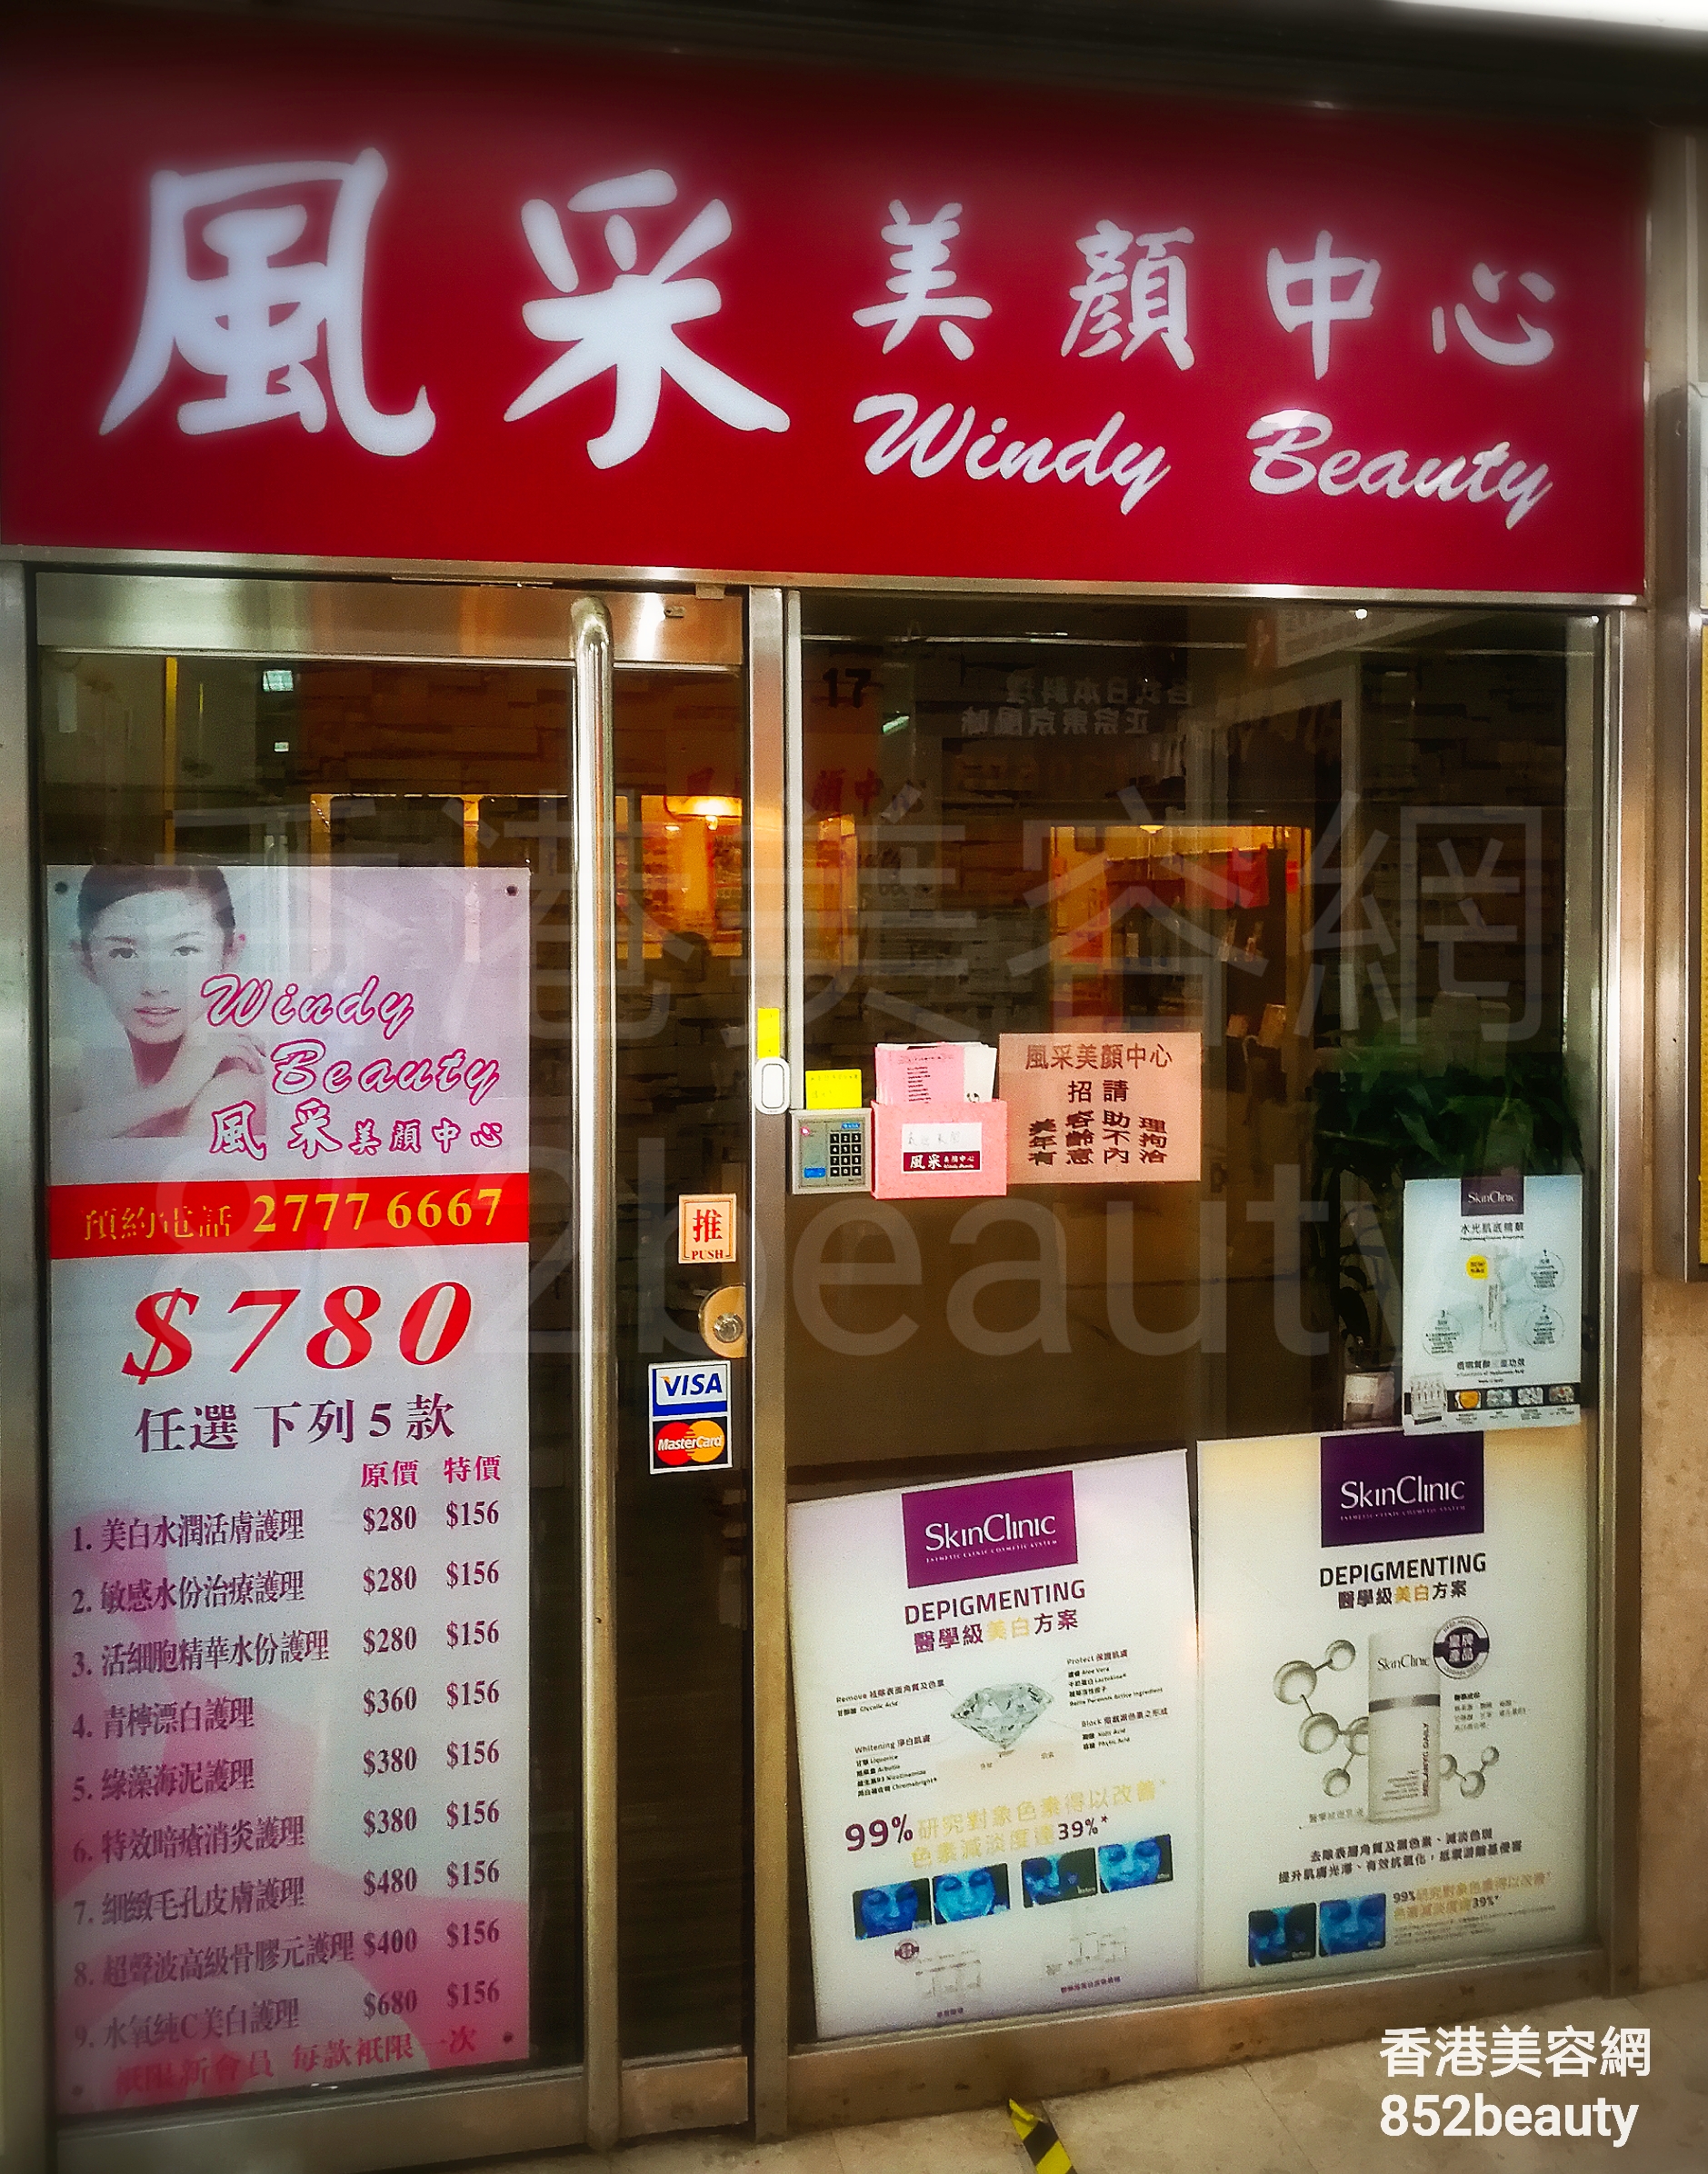 香港美容網 Hong Kong Beauty Salon 美容院 / 美容師: 風采美顏中心 Windy Beauty